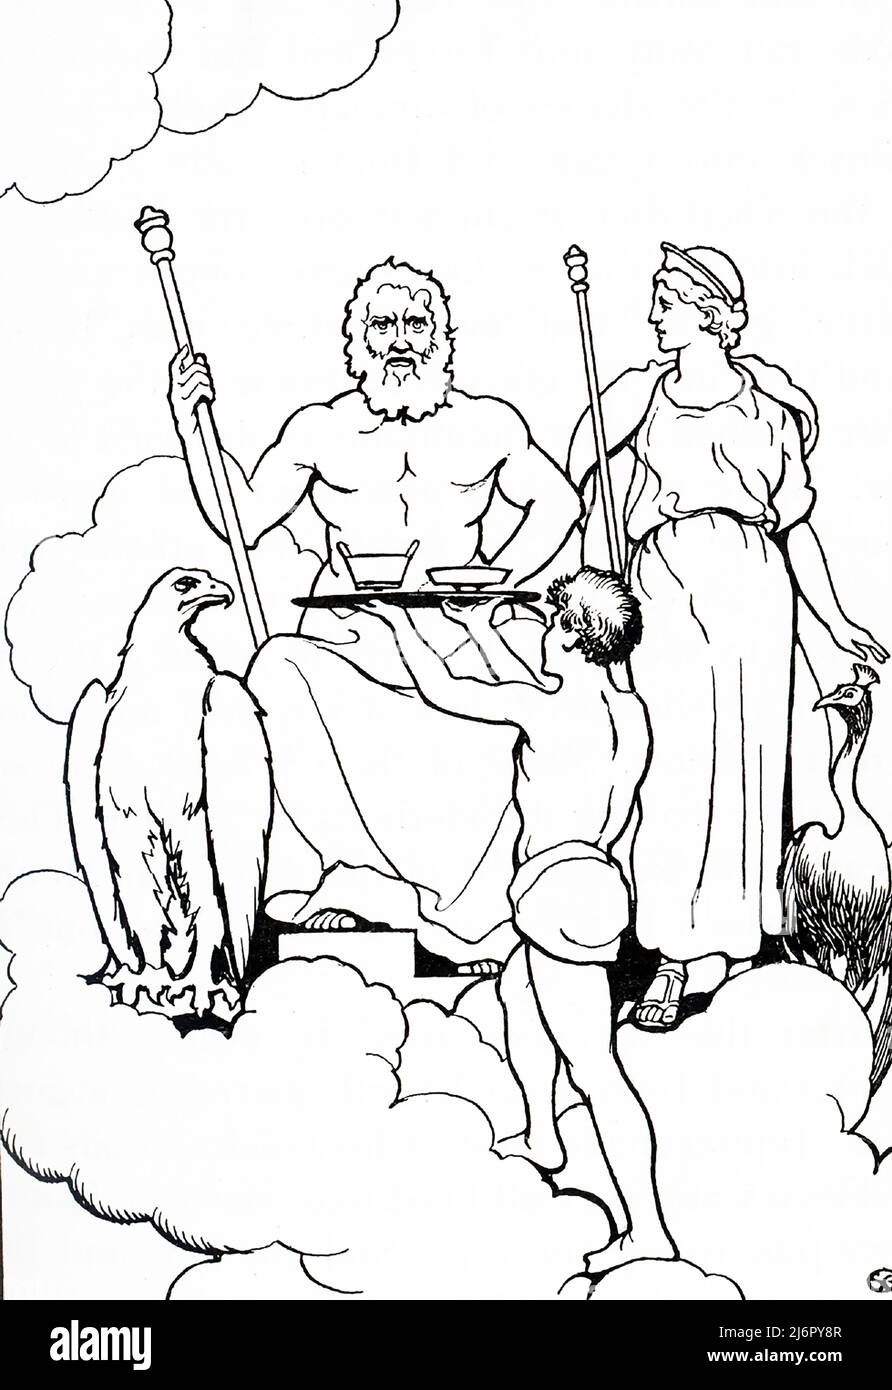 Jupiter, auch als Jove bekannt, ist der gott des Himmels und des Donners sowie der König der Götter in der antiken römischen Mythologie. Jupiter ist der oberste gott des römischen Pantheons. Jupiter wurde als die Hauptgottheit der römischen Staatsreligion während der republikanischen und imperialen Ära angesehen, bis das Christentum die dominierende Religion wurde. Hier auf seinem Thron auf dem Olymp hat er seinen Adler dabei. Der Adler diente als Jupiters persönlicher Bote. Mythen zufolge hat ein Adler den jungen Ganymede zum Olymp getragen, wo er als Mundschenk der Götter diente. Jupiter war den Griechen als Zeus bekannt. Stockfoto